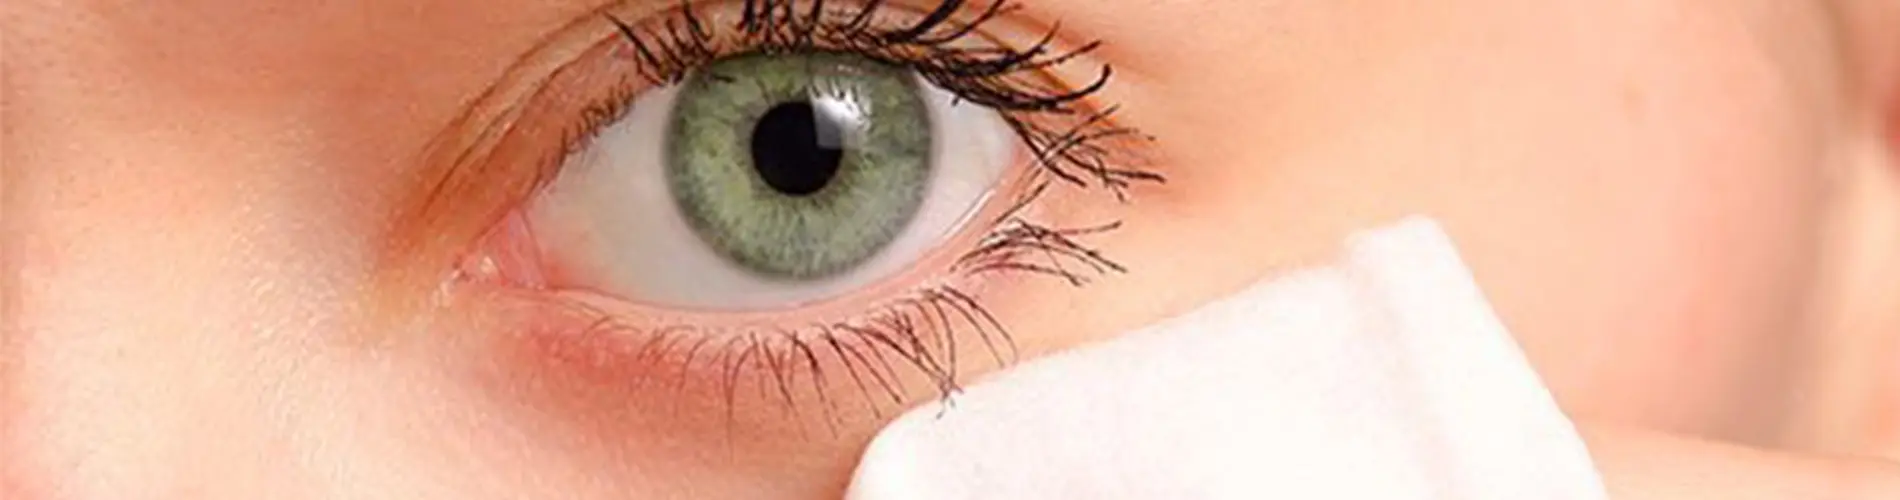 vidrio en el ojo sintomas - Cómo se limpia el vidrio del ojo